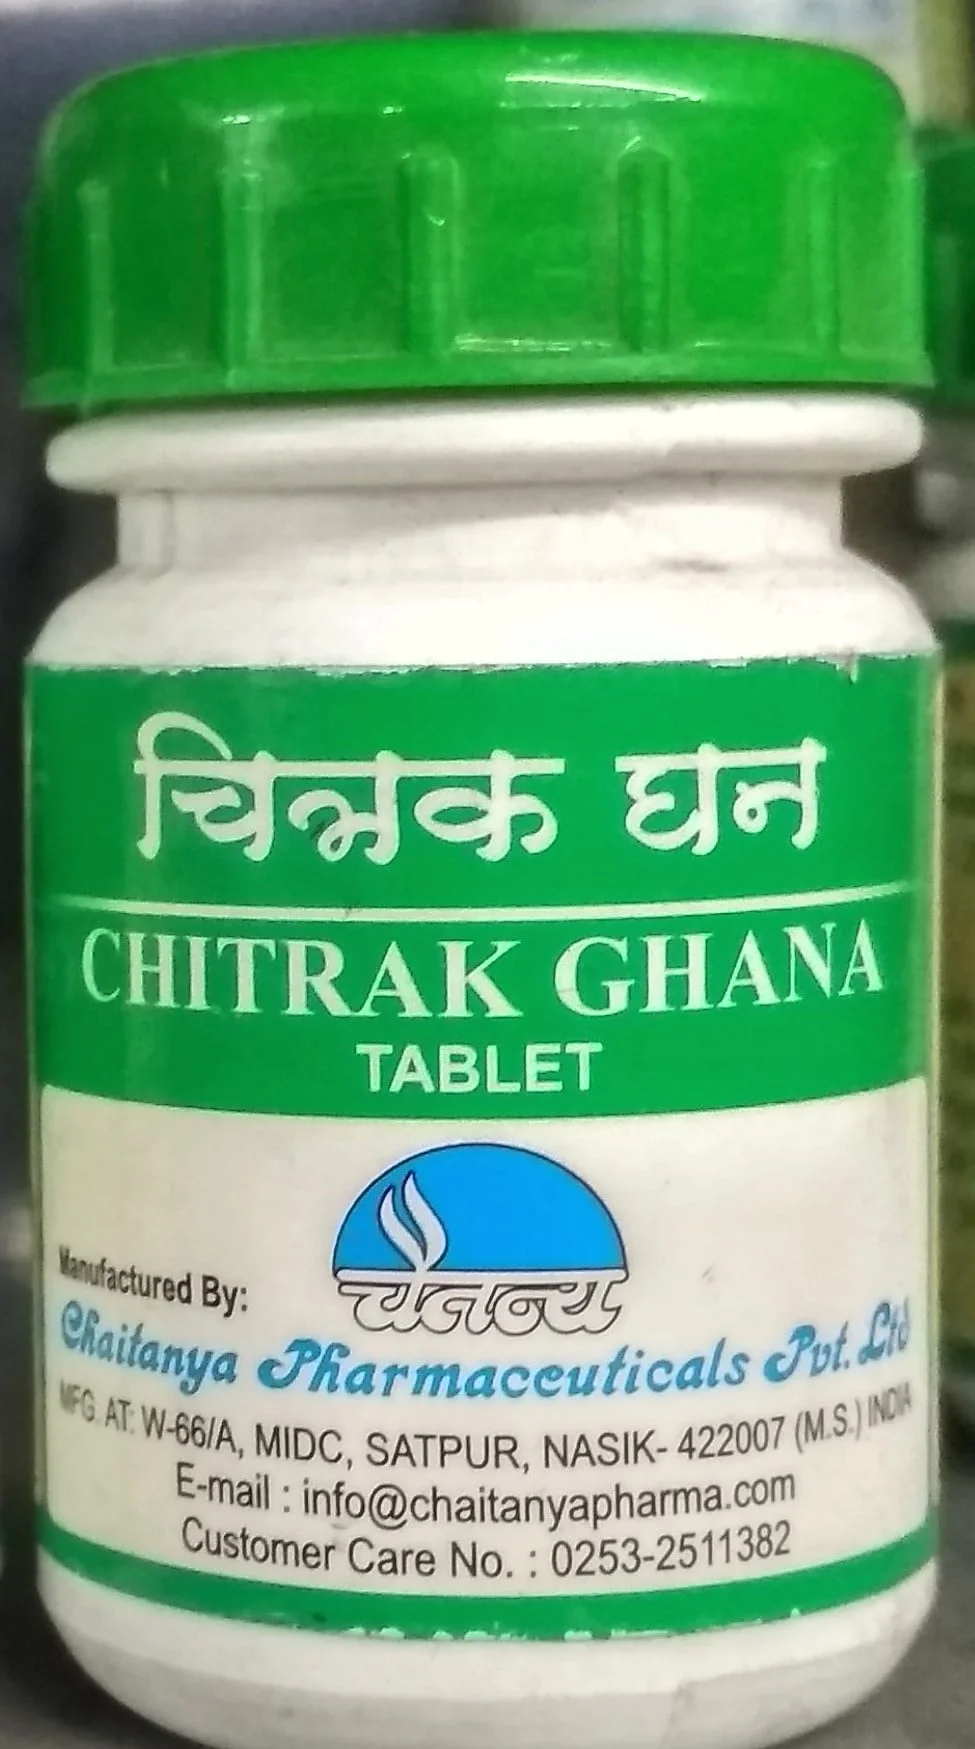 chitrak ghana 60tab upto 20% off chaitanya pharmaceuticals